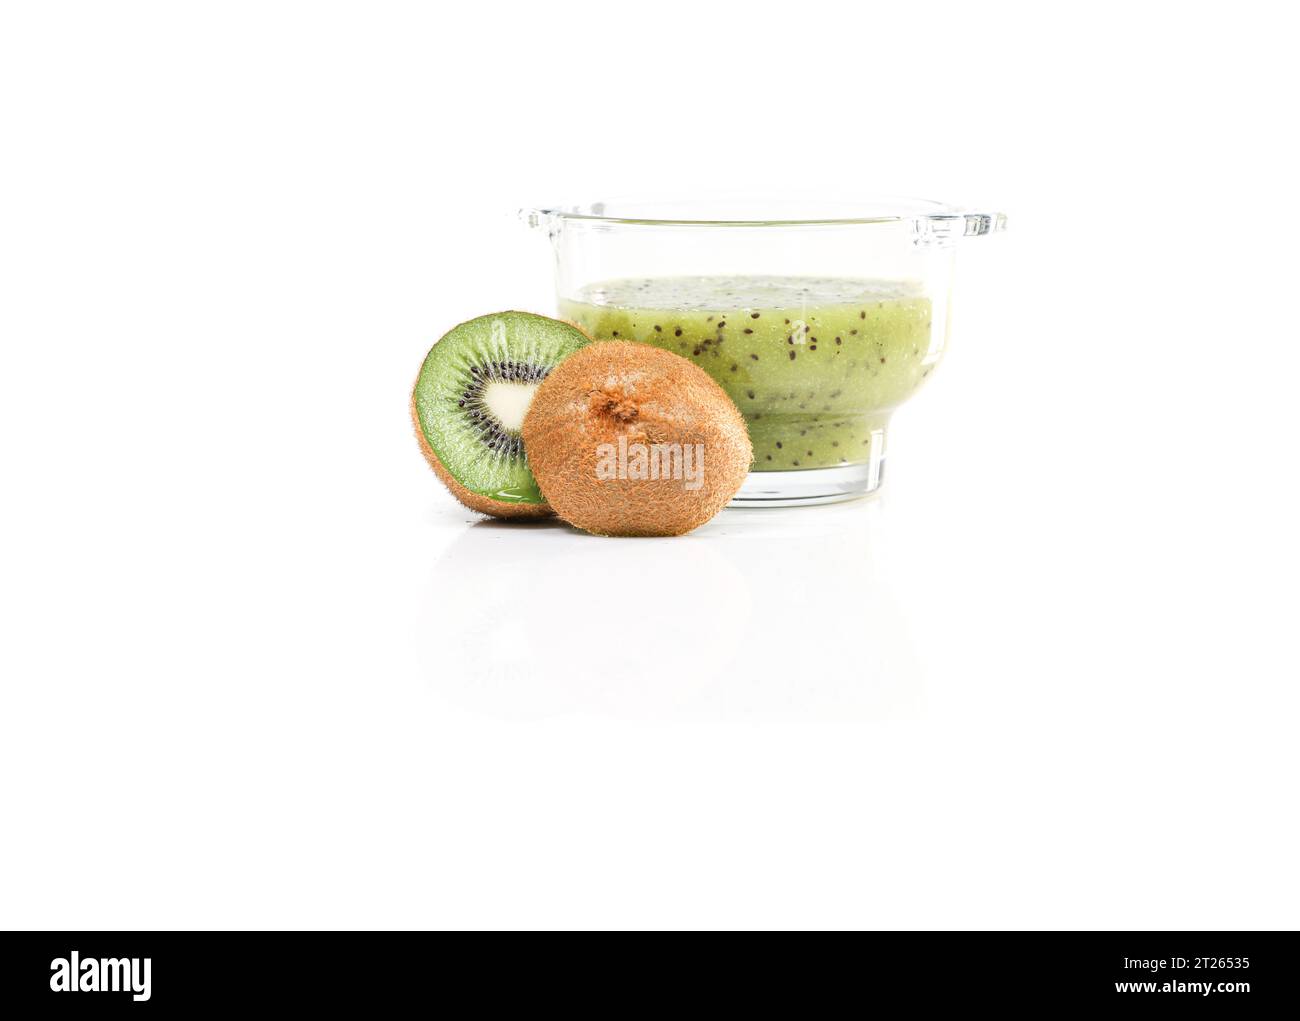 Fresh and juicy kiwi fruit Stock Photo